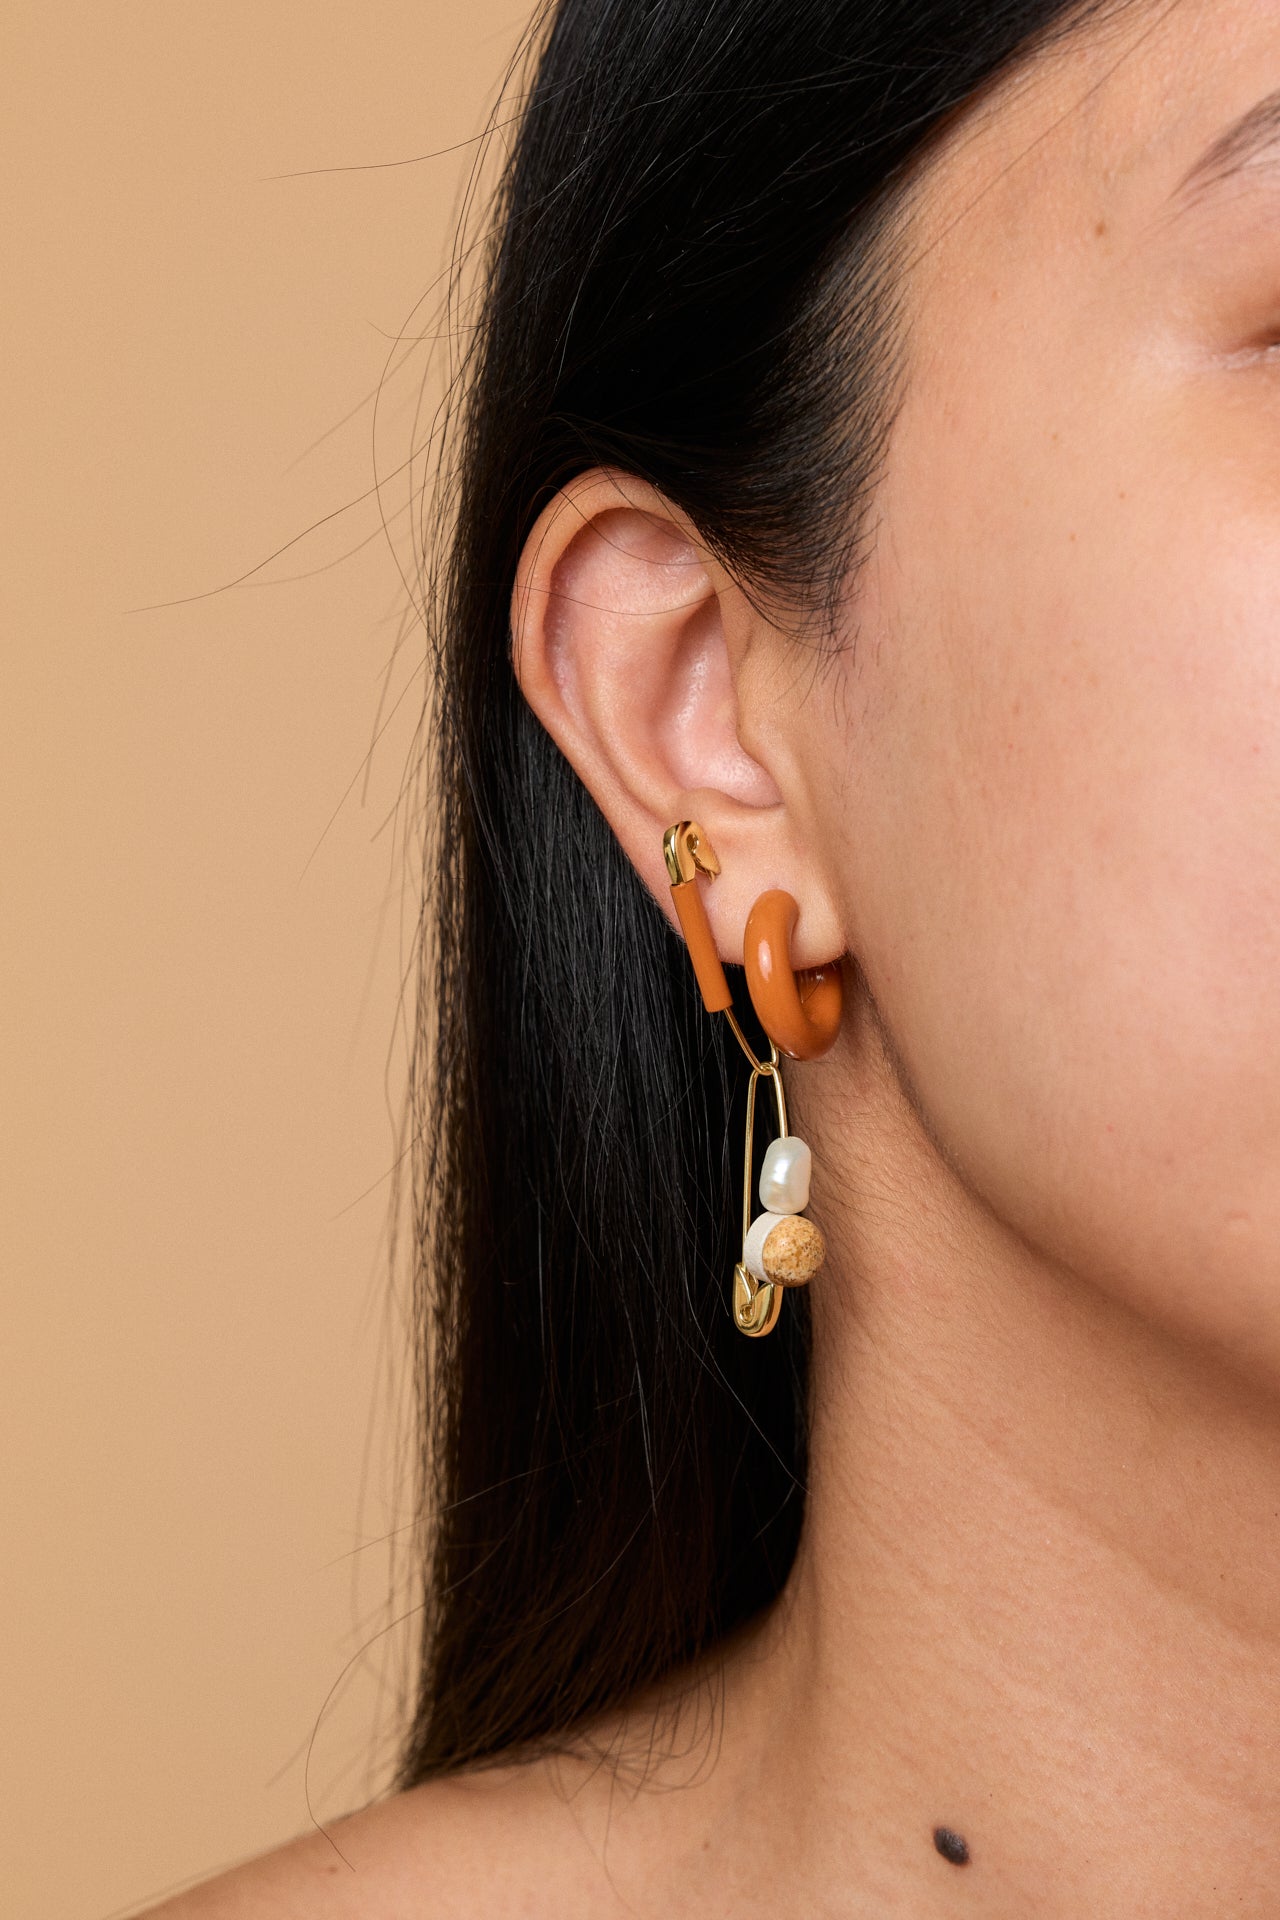 Gold Safety Pin Earring with Terracotta Enamel Hoop Earring